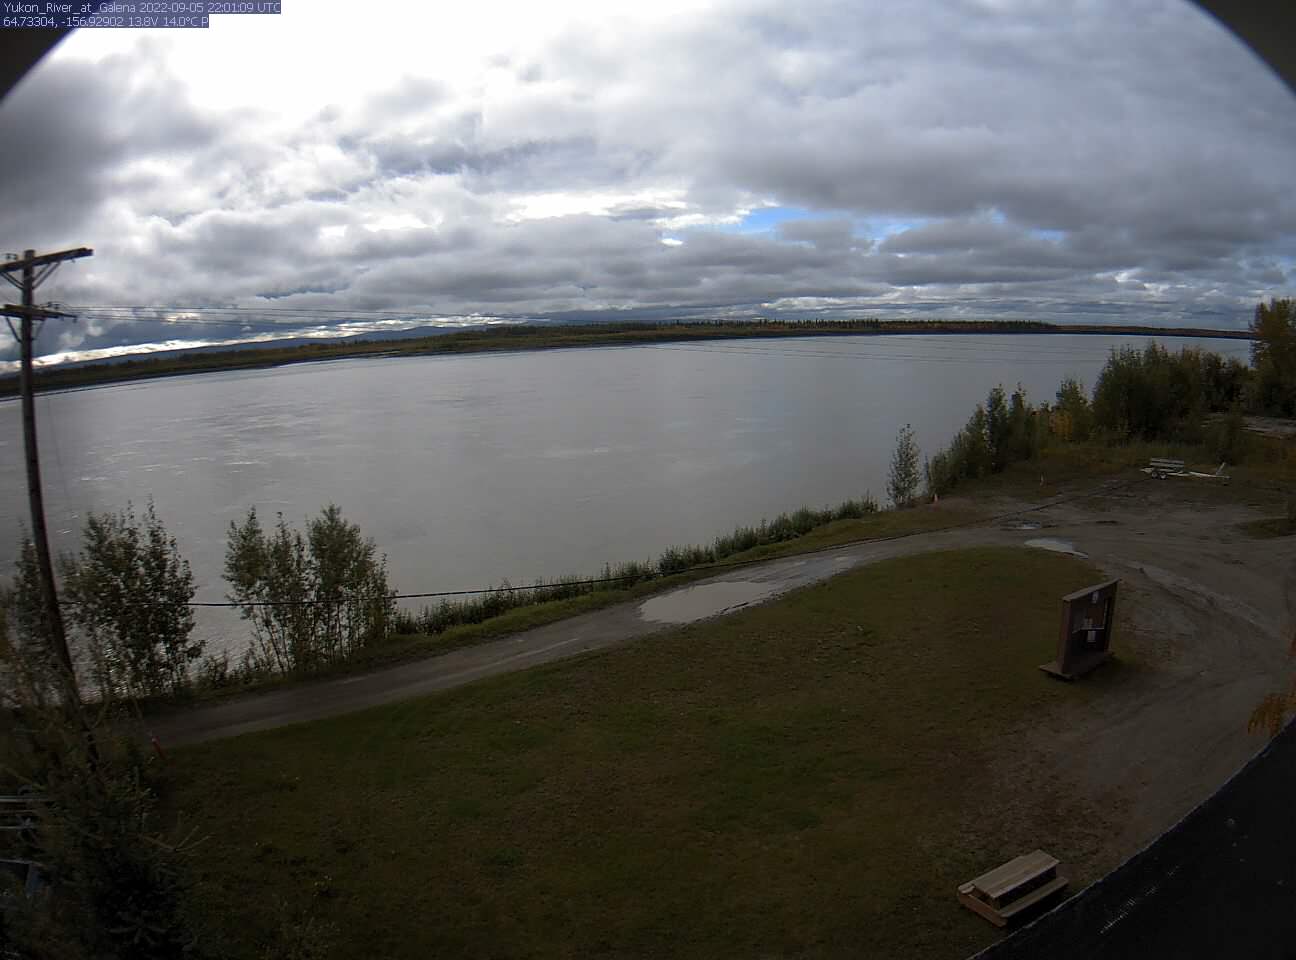 Yukon_River_at_Galena_20220905220110.jpg